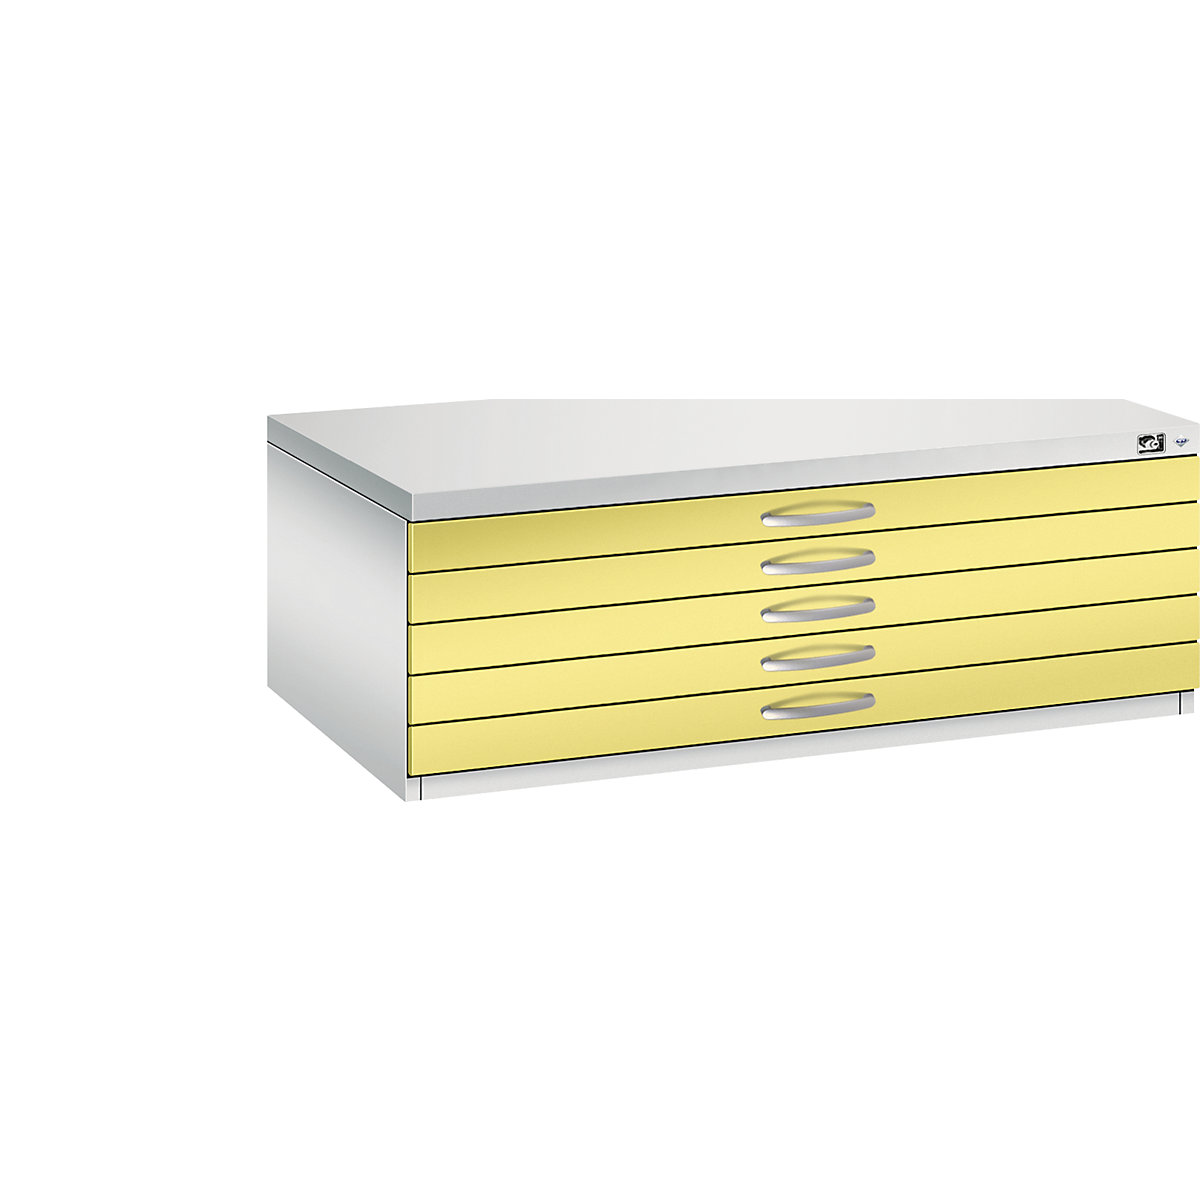 Dulap pentru planșe – C+P, DIN A1, 5 sertare, înălțime 420 mm, gri deschis / galben sulf-19